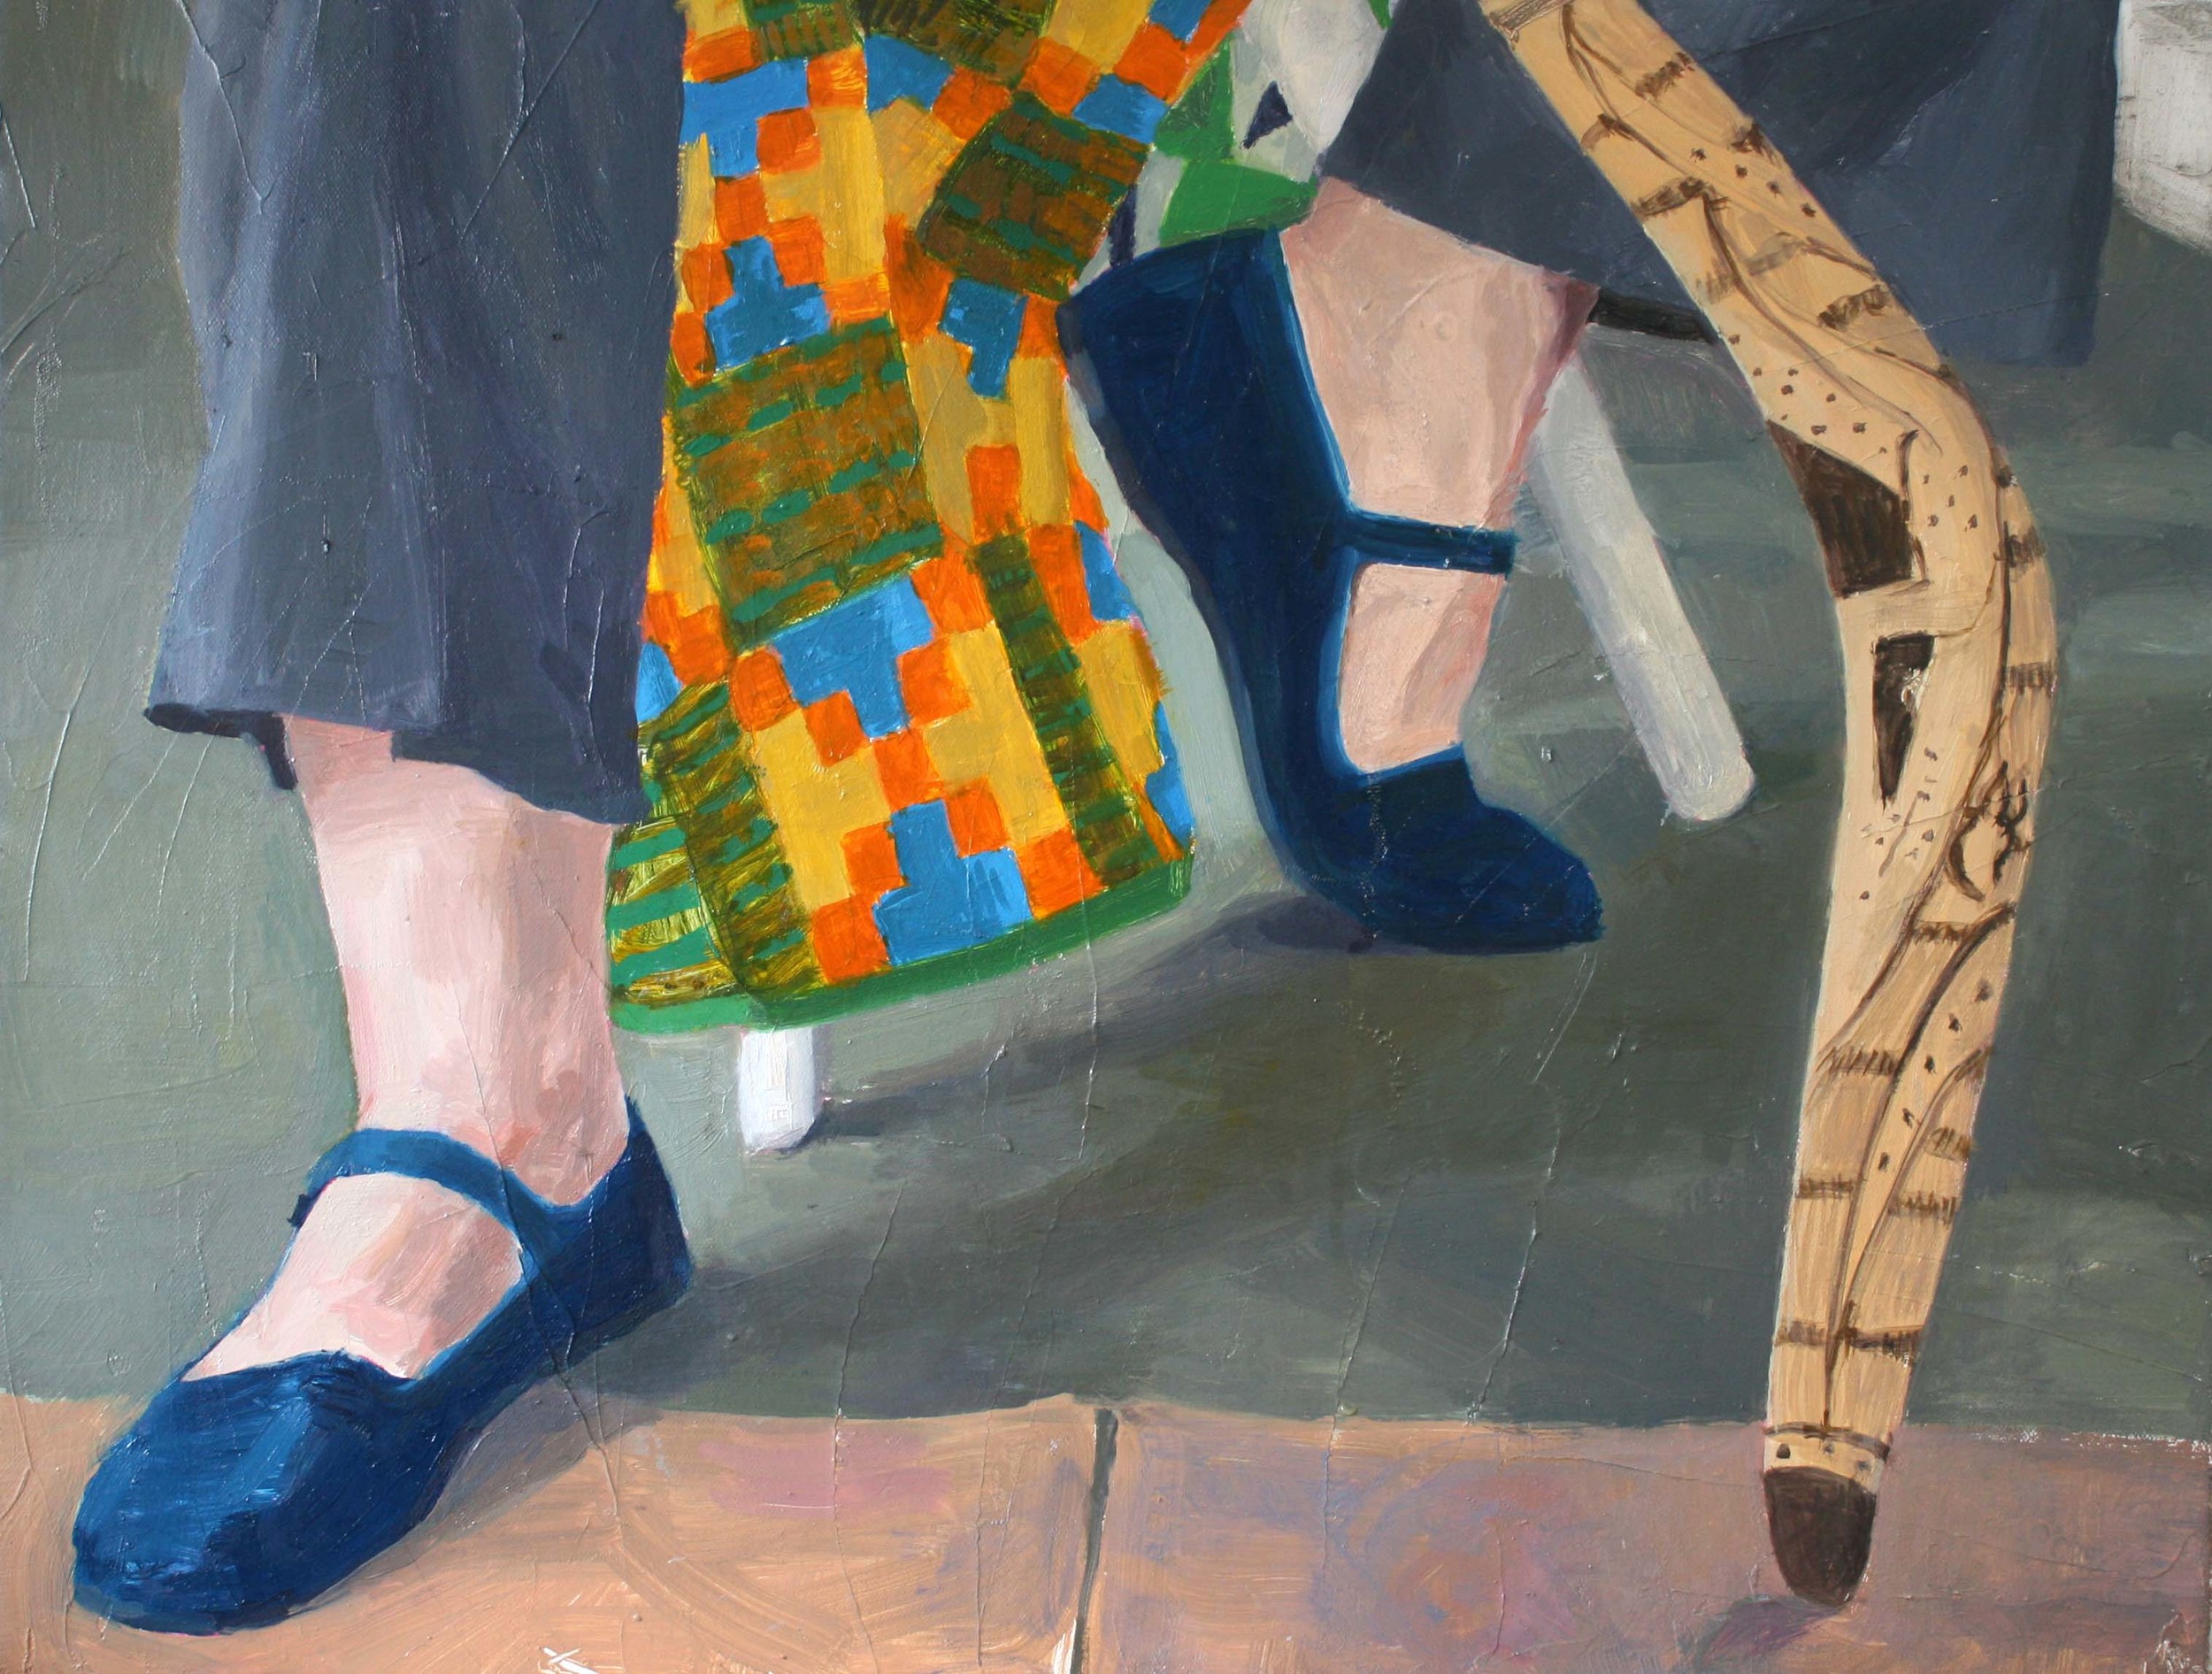   Velvet Slippers, Boomerang , 2013. Oil on canvas, 18 x 24" 